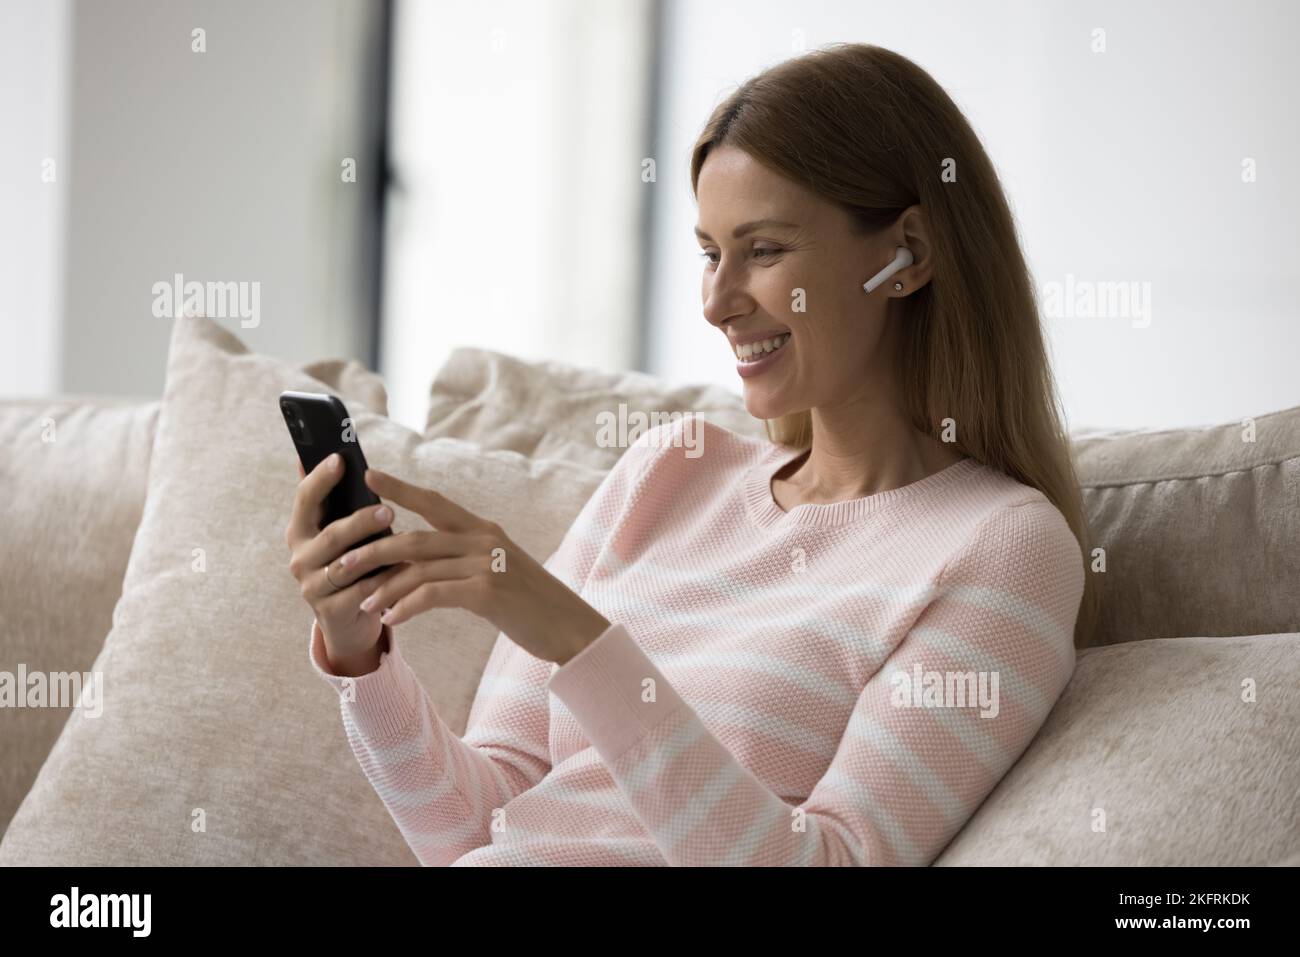 La mujer sostiene que el smartphone escucha los mensajes de audio a través de los auriculares inalámbricos Foto de stock